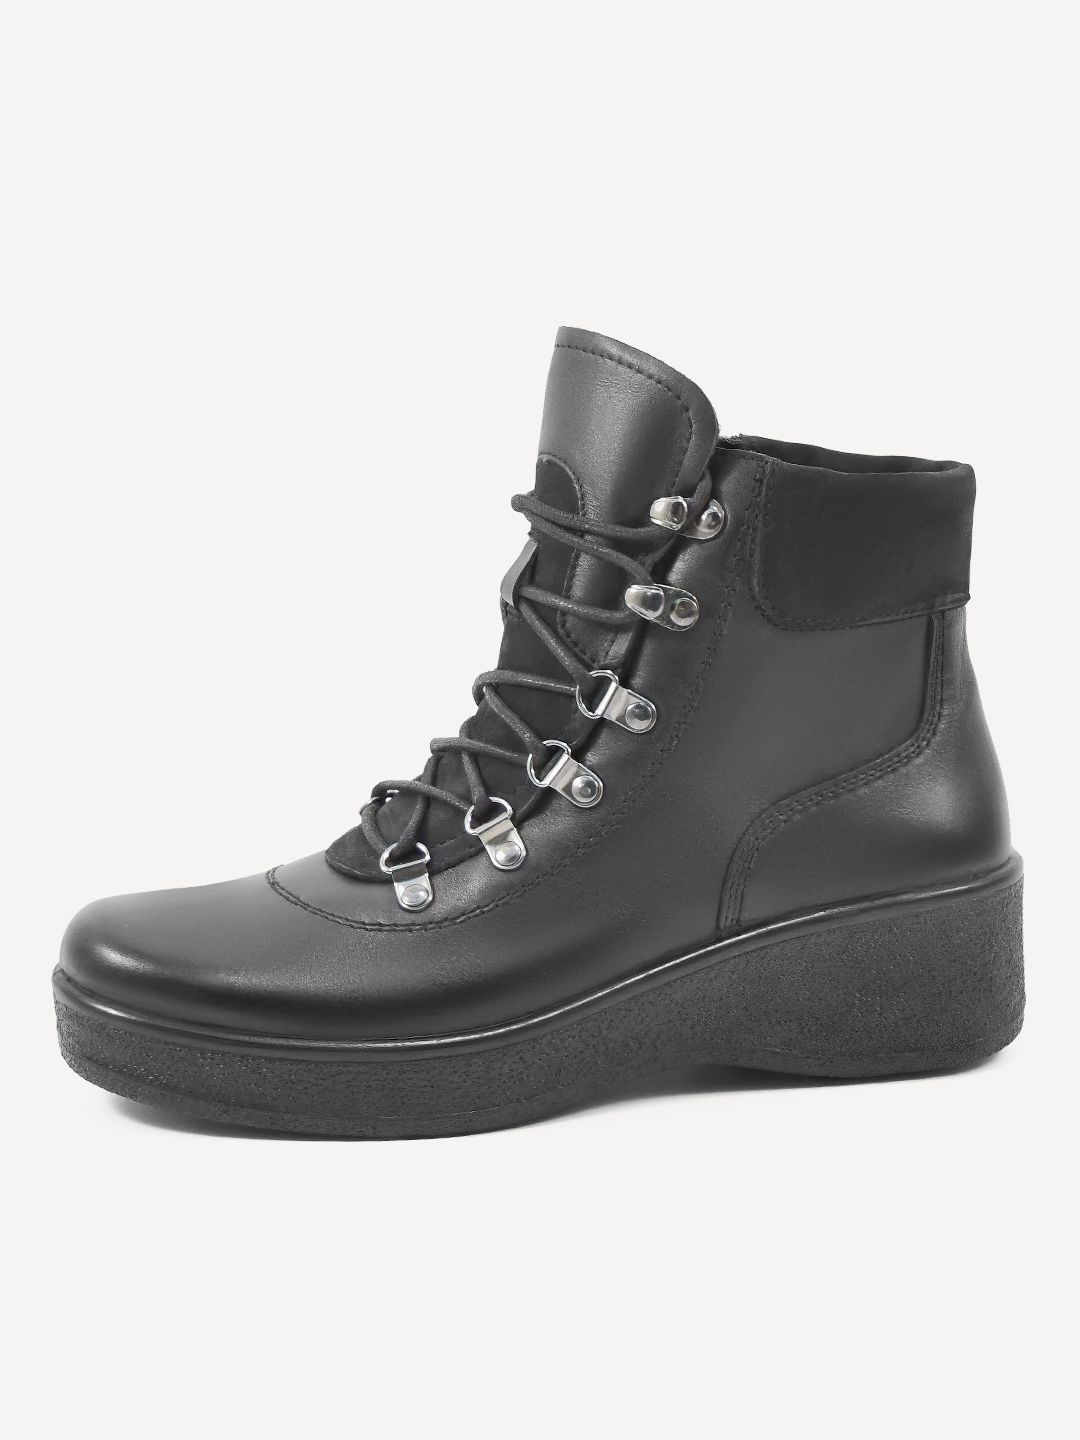 Ботинки женские Melitta Shoes 5737/5 черные 39 RU